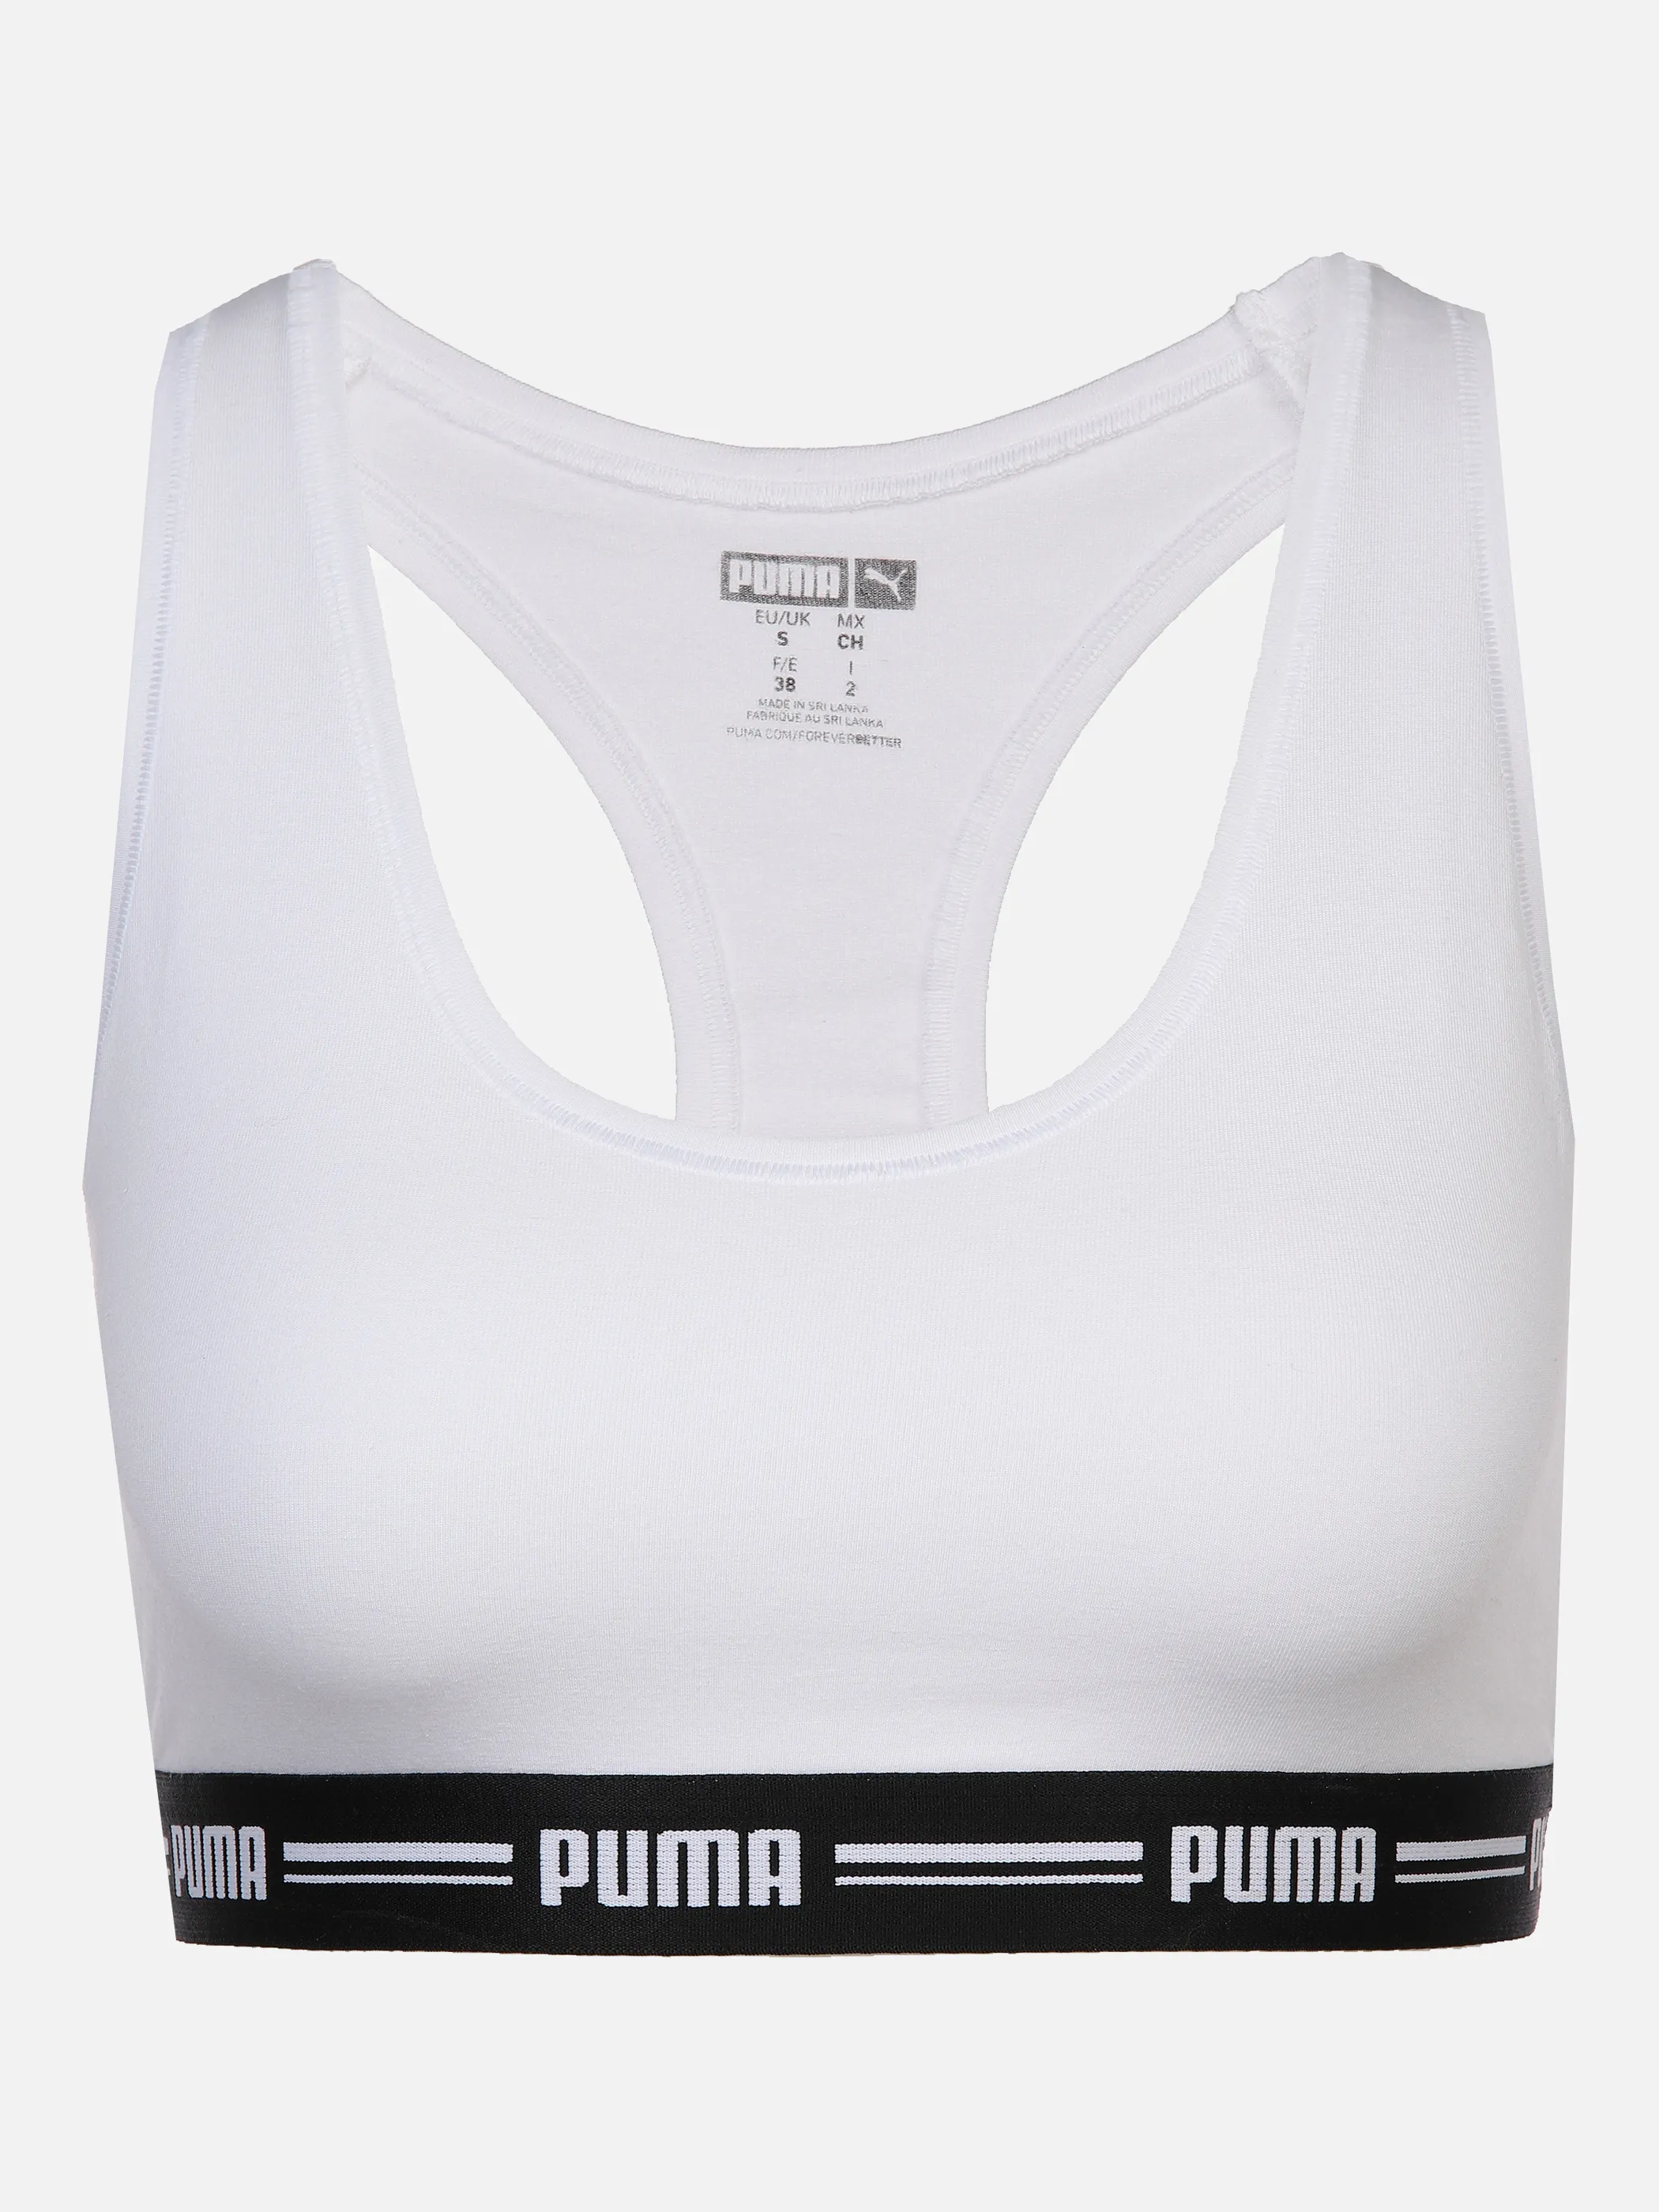 Puma 604022001 Da-Racer Back Top Weiß 871345 300 1